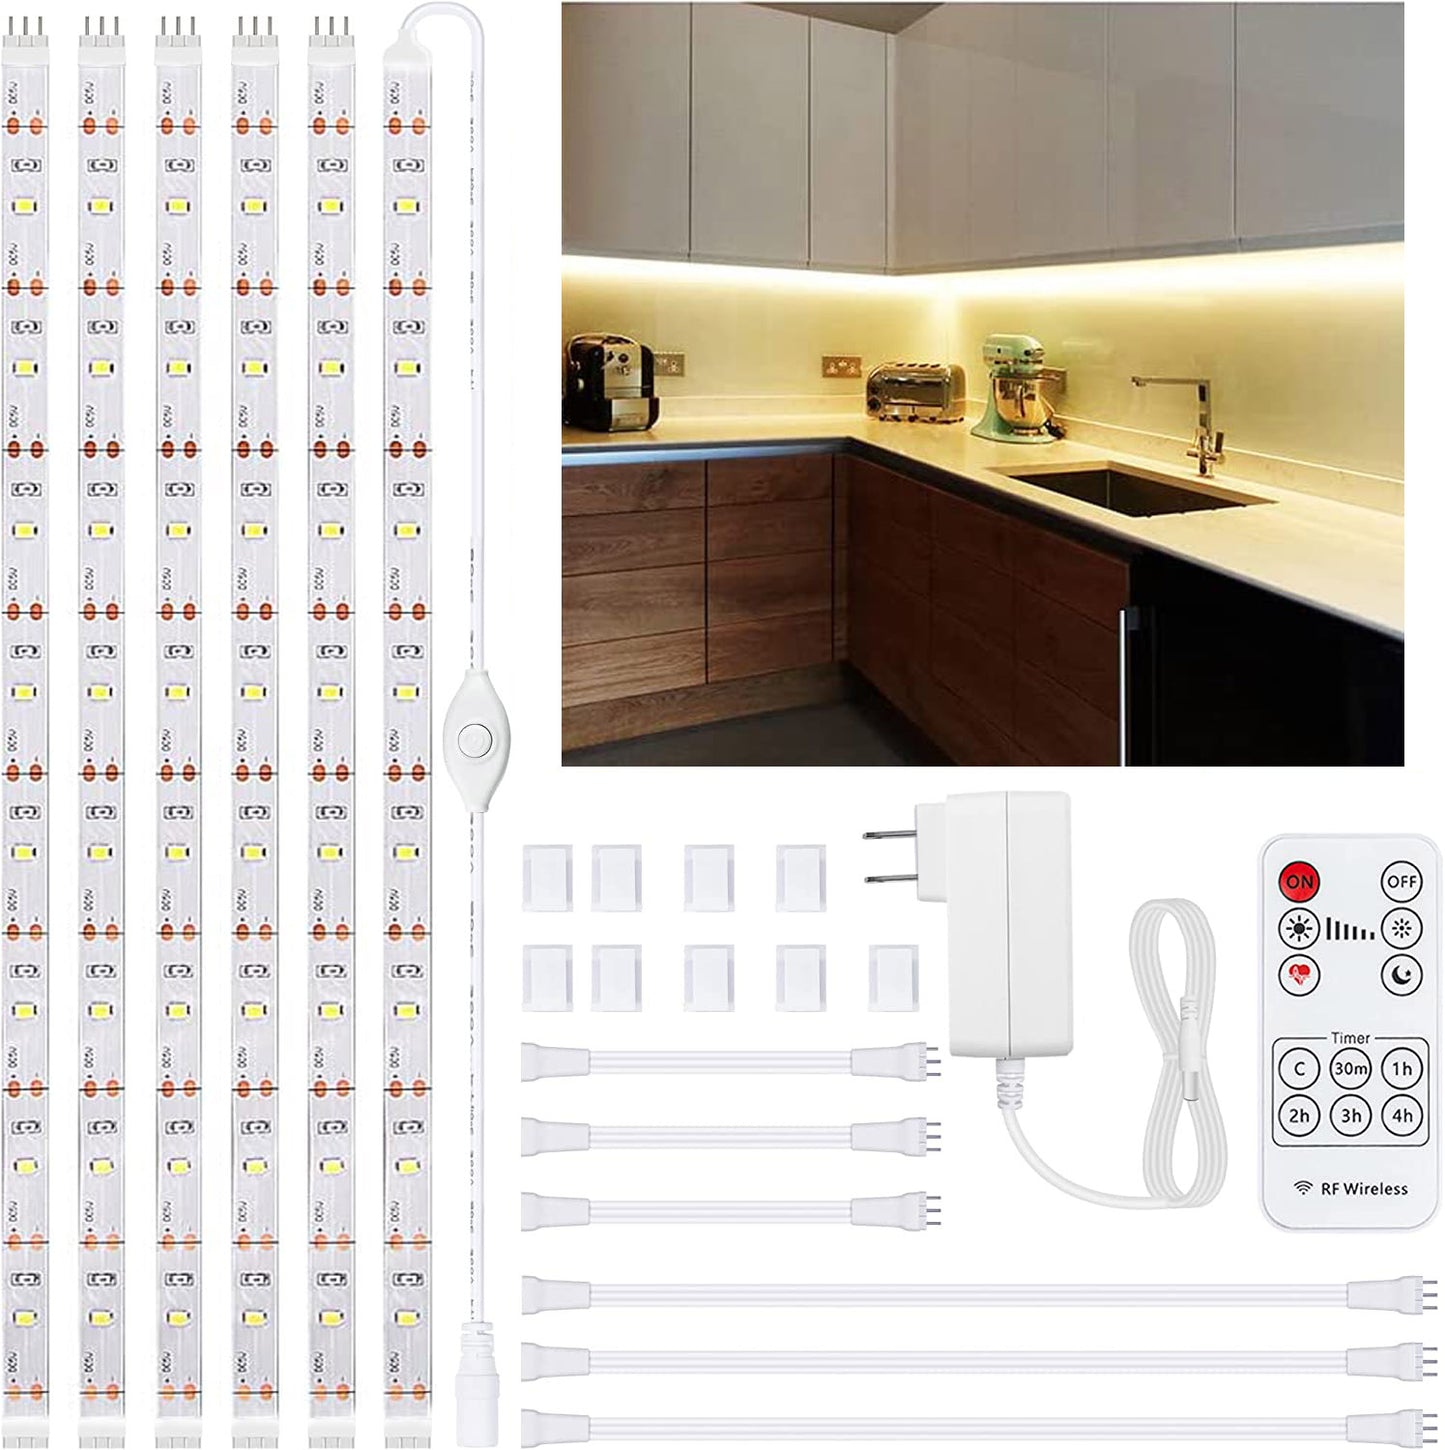 6pcs 20" Under Cabinet Lighting Kit, Flexible LED Strip Lights with Remote for Kitchen, Cupboard,Desk, Monitor Back,Shelf, 9.8FT